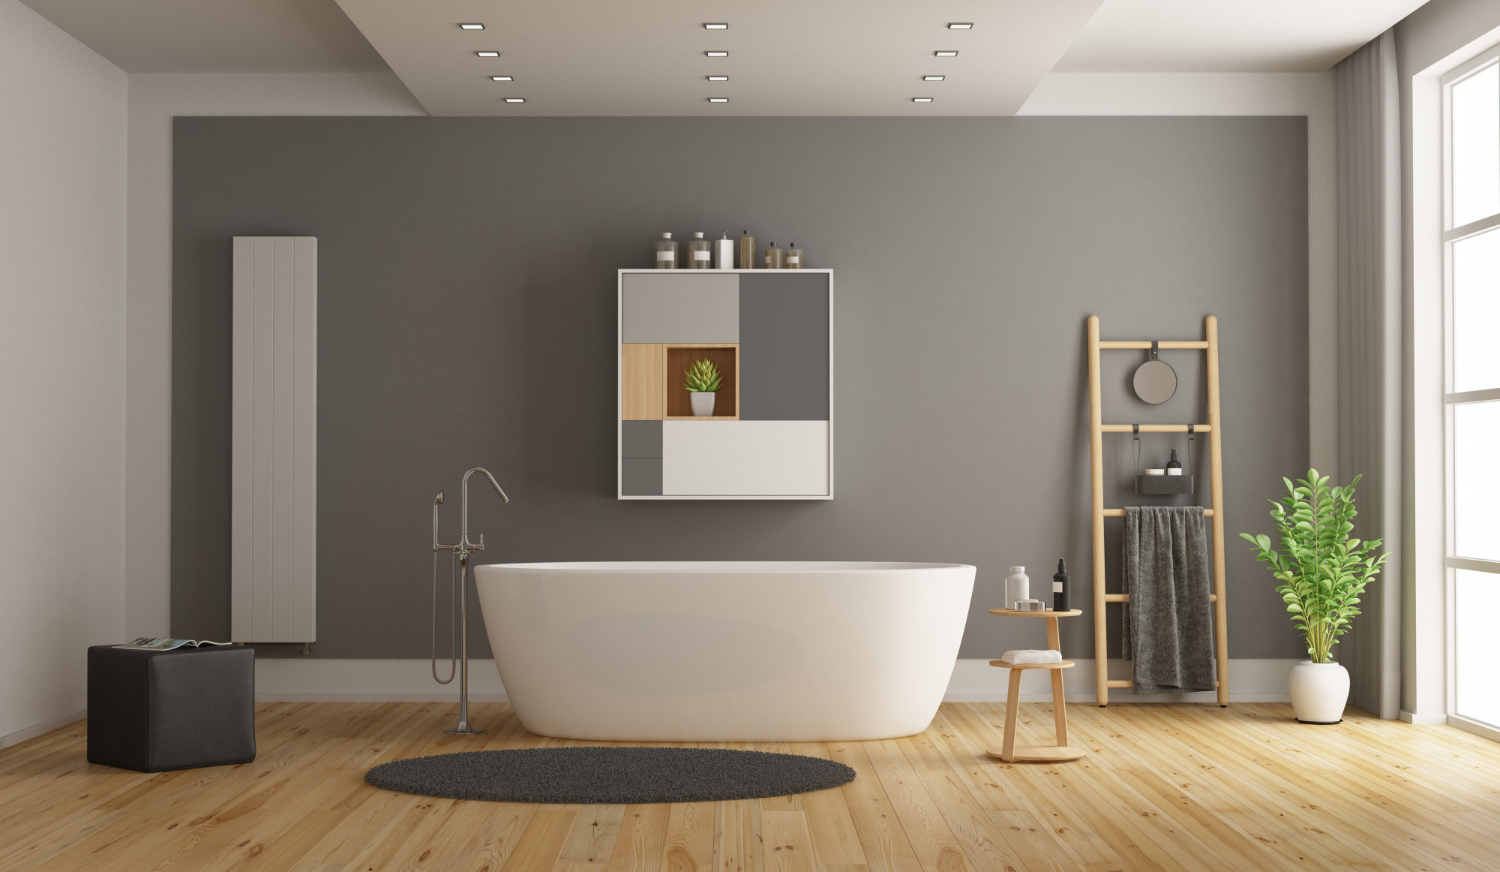 Lampu tanam yang disusun rapi pada plafon minimalis bertingkat akan membuat kamar mandi makin indah.